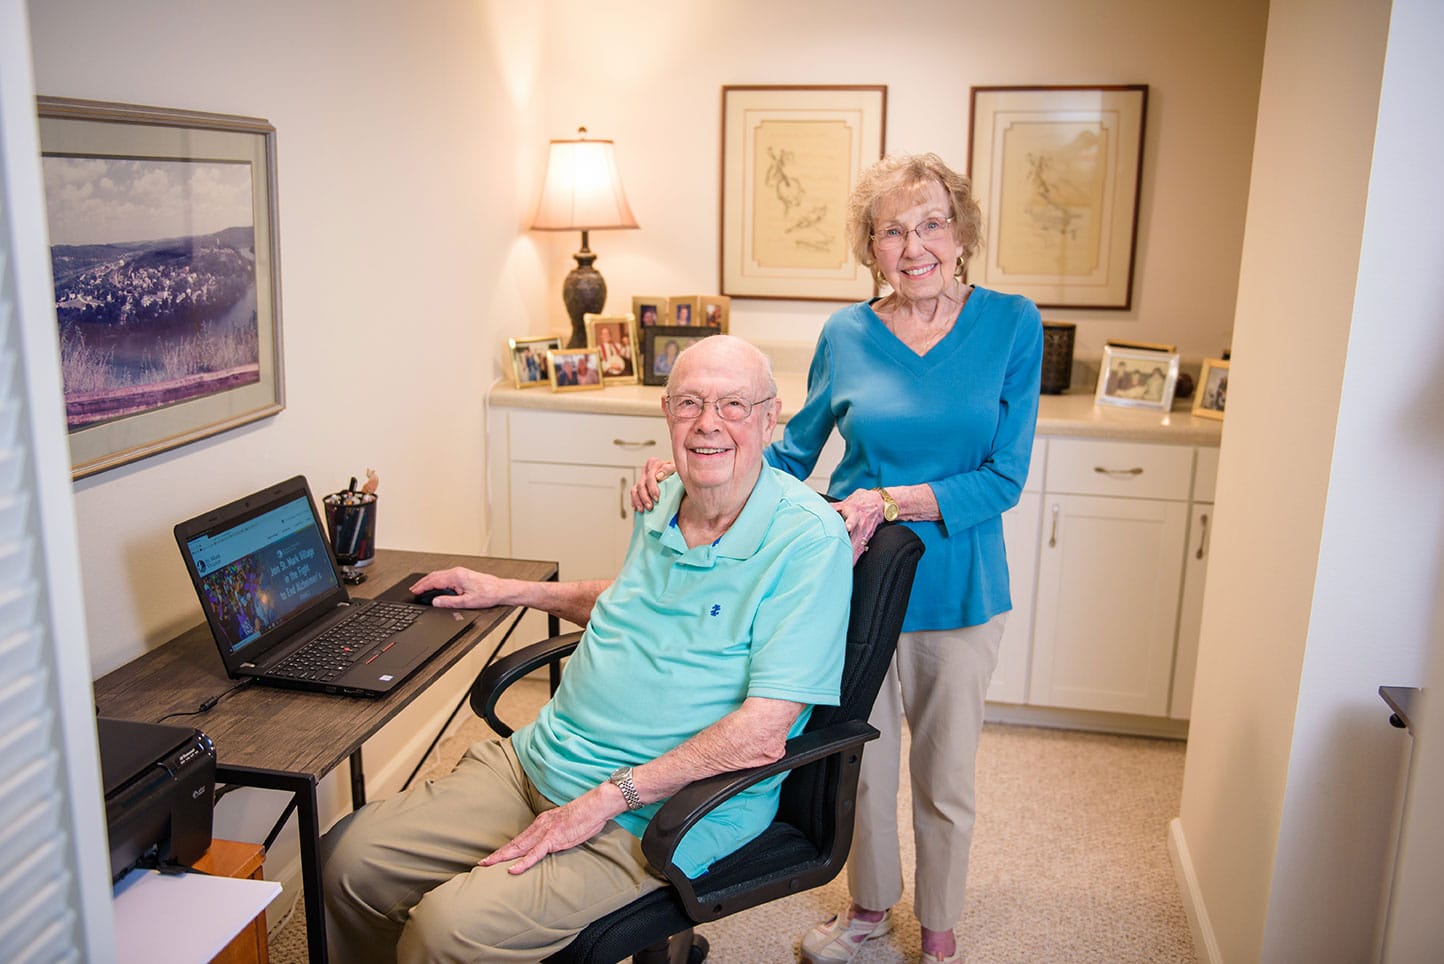 Senior couple at computer smiling at camera